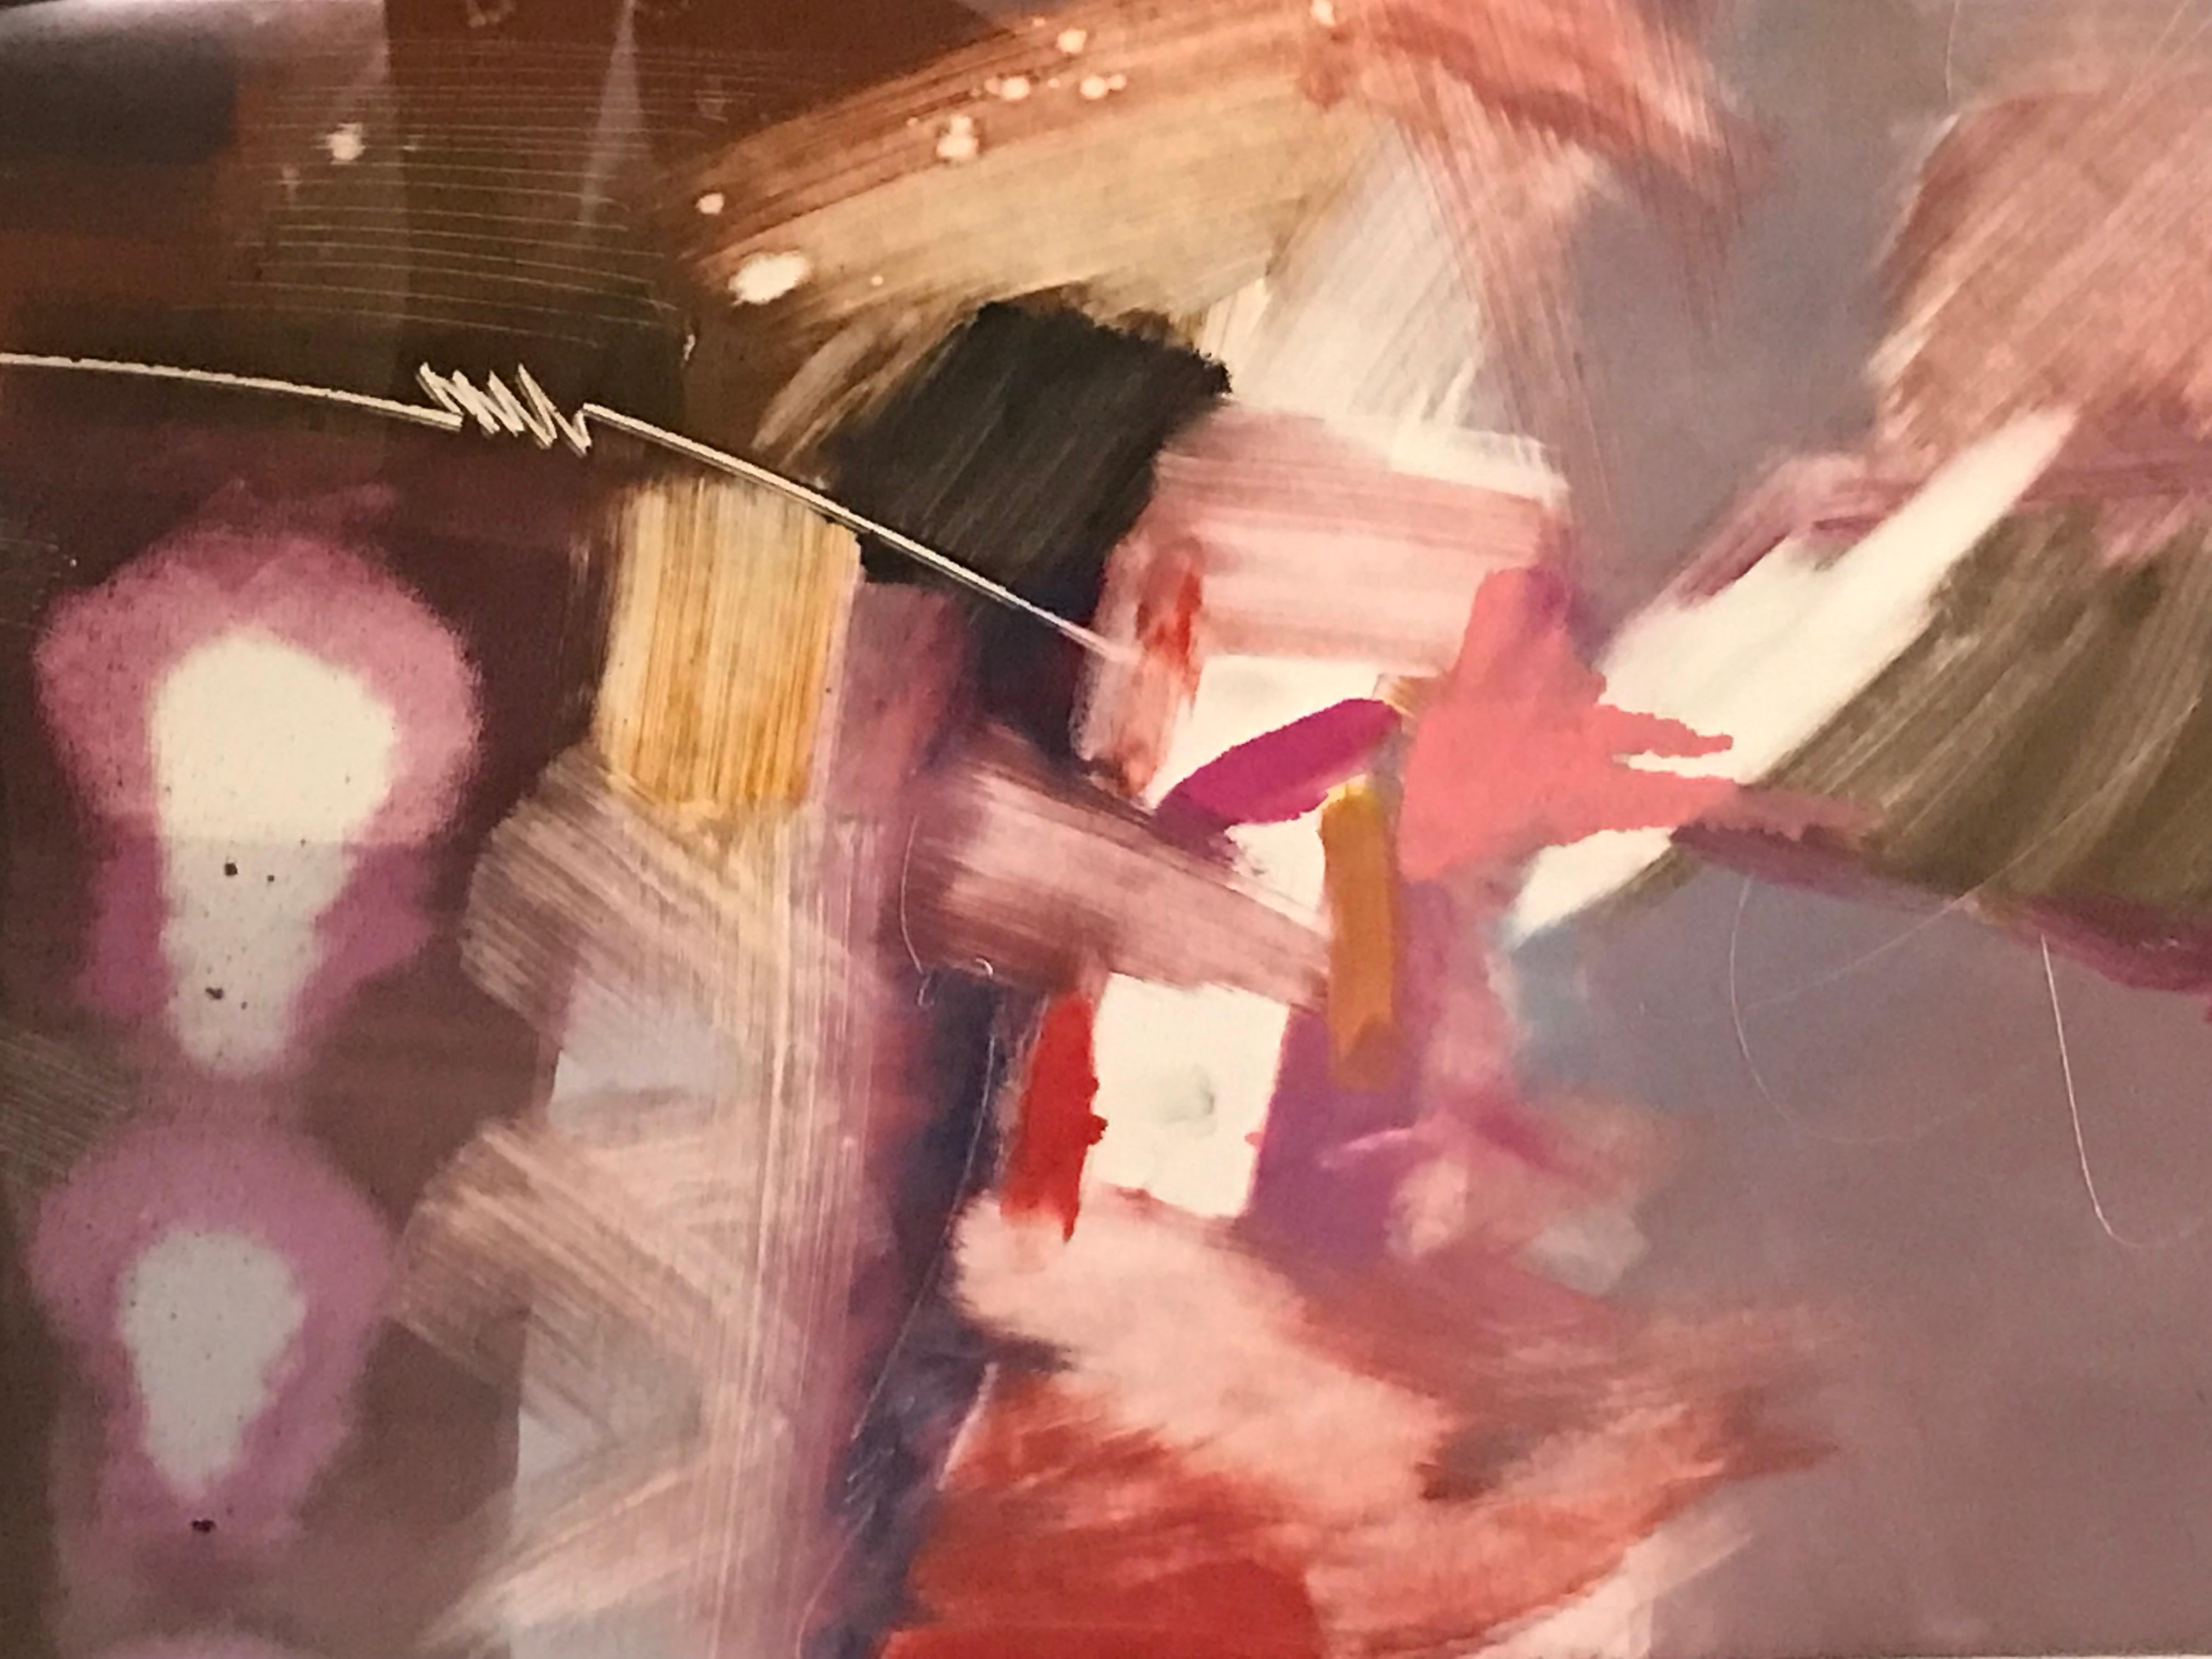 Farbenfroher abstrakter Monodruck des kubanischen Amerikaners Victor Gomez (1941-Kuba). Farbpalette aus Rosa, Violett, Rot und Schokoladenbraun auf weißem Papierhintergrund. Museum gerahmt in originalem Acrylrahmen.
Monodruck oder Monotypie ist ein